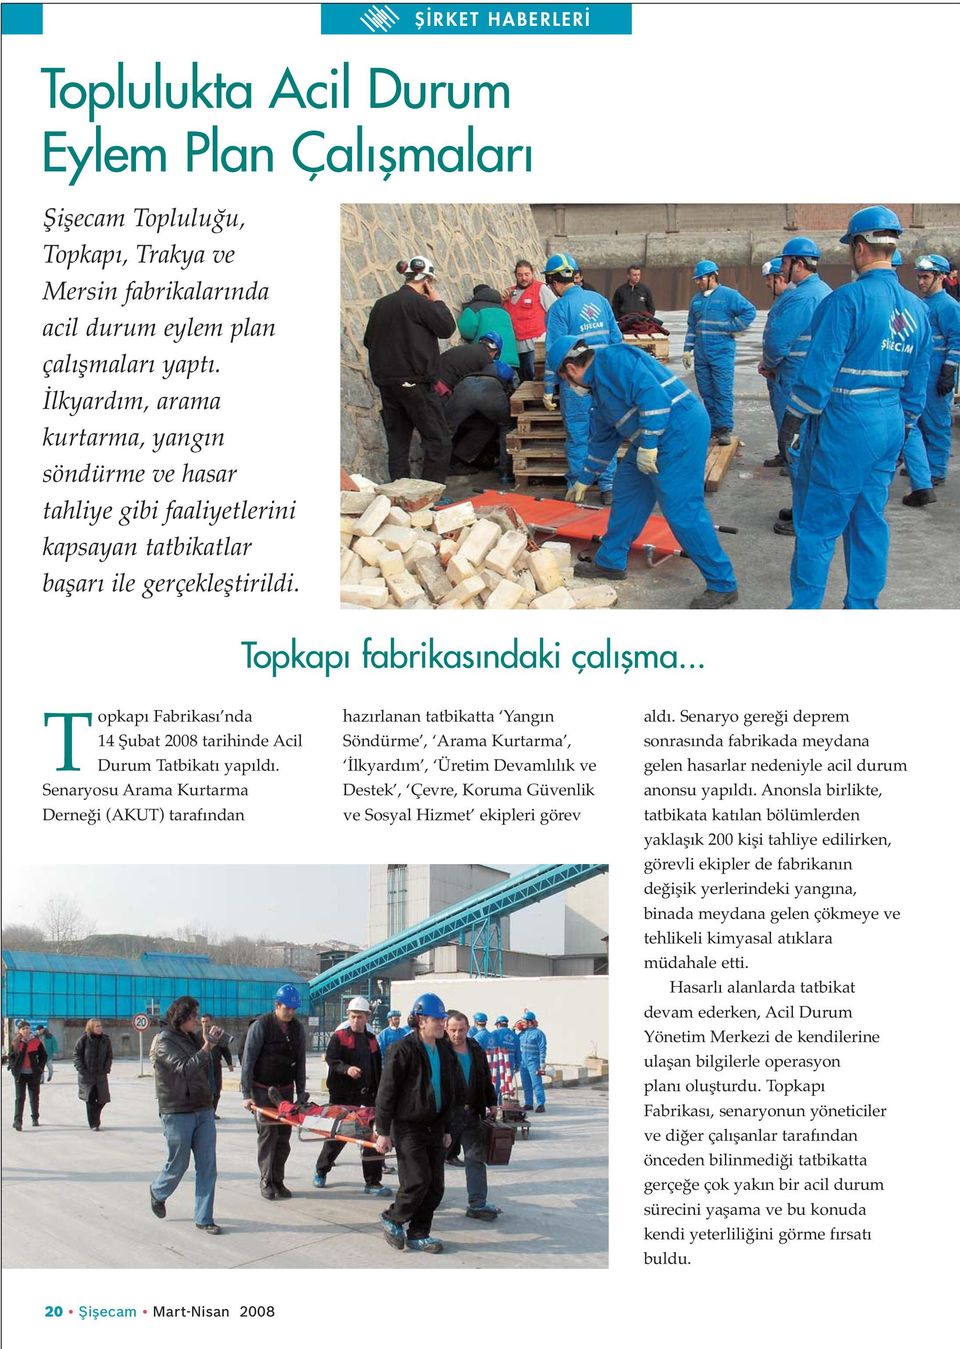 .. Topkapı Fabrikası nda 14 Şubat 2008 tarihinde Acil Durum Tatbikatı yapıldı.